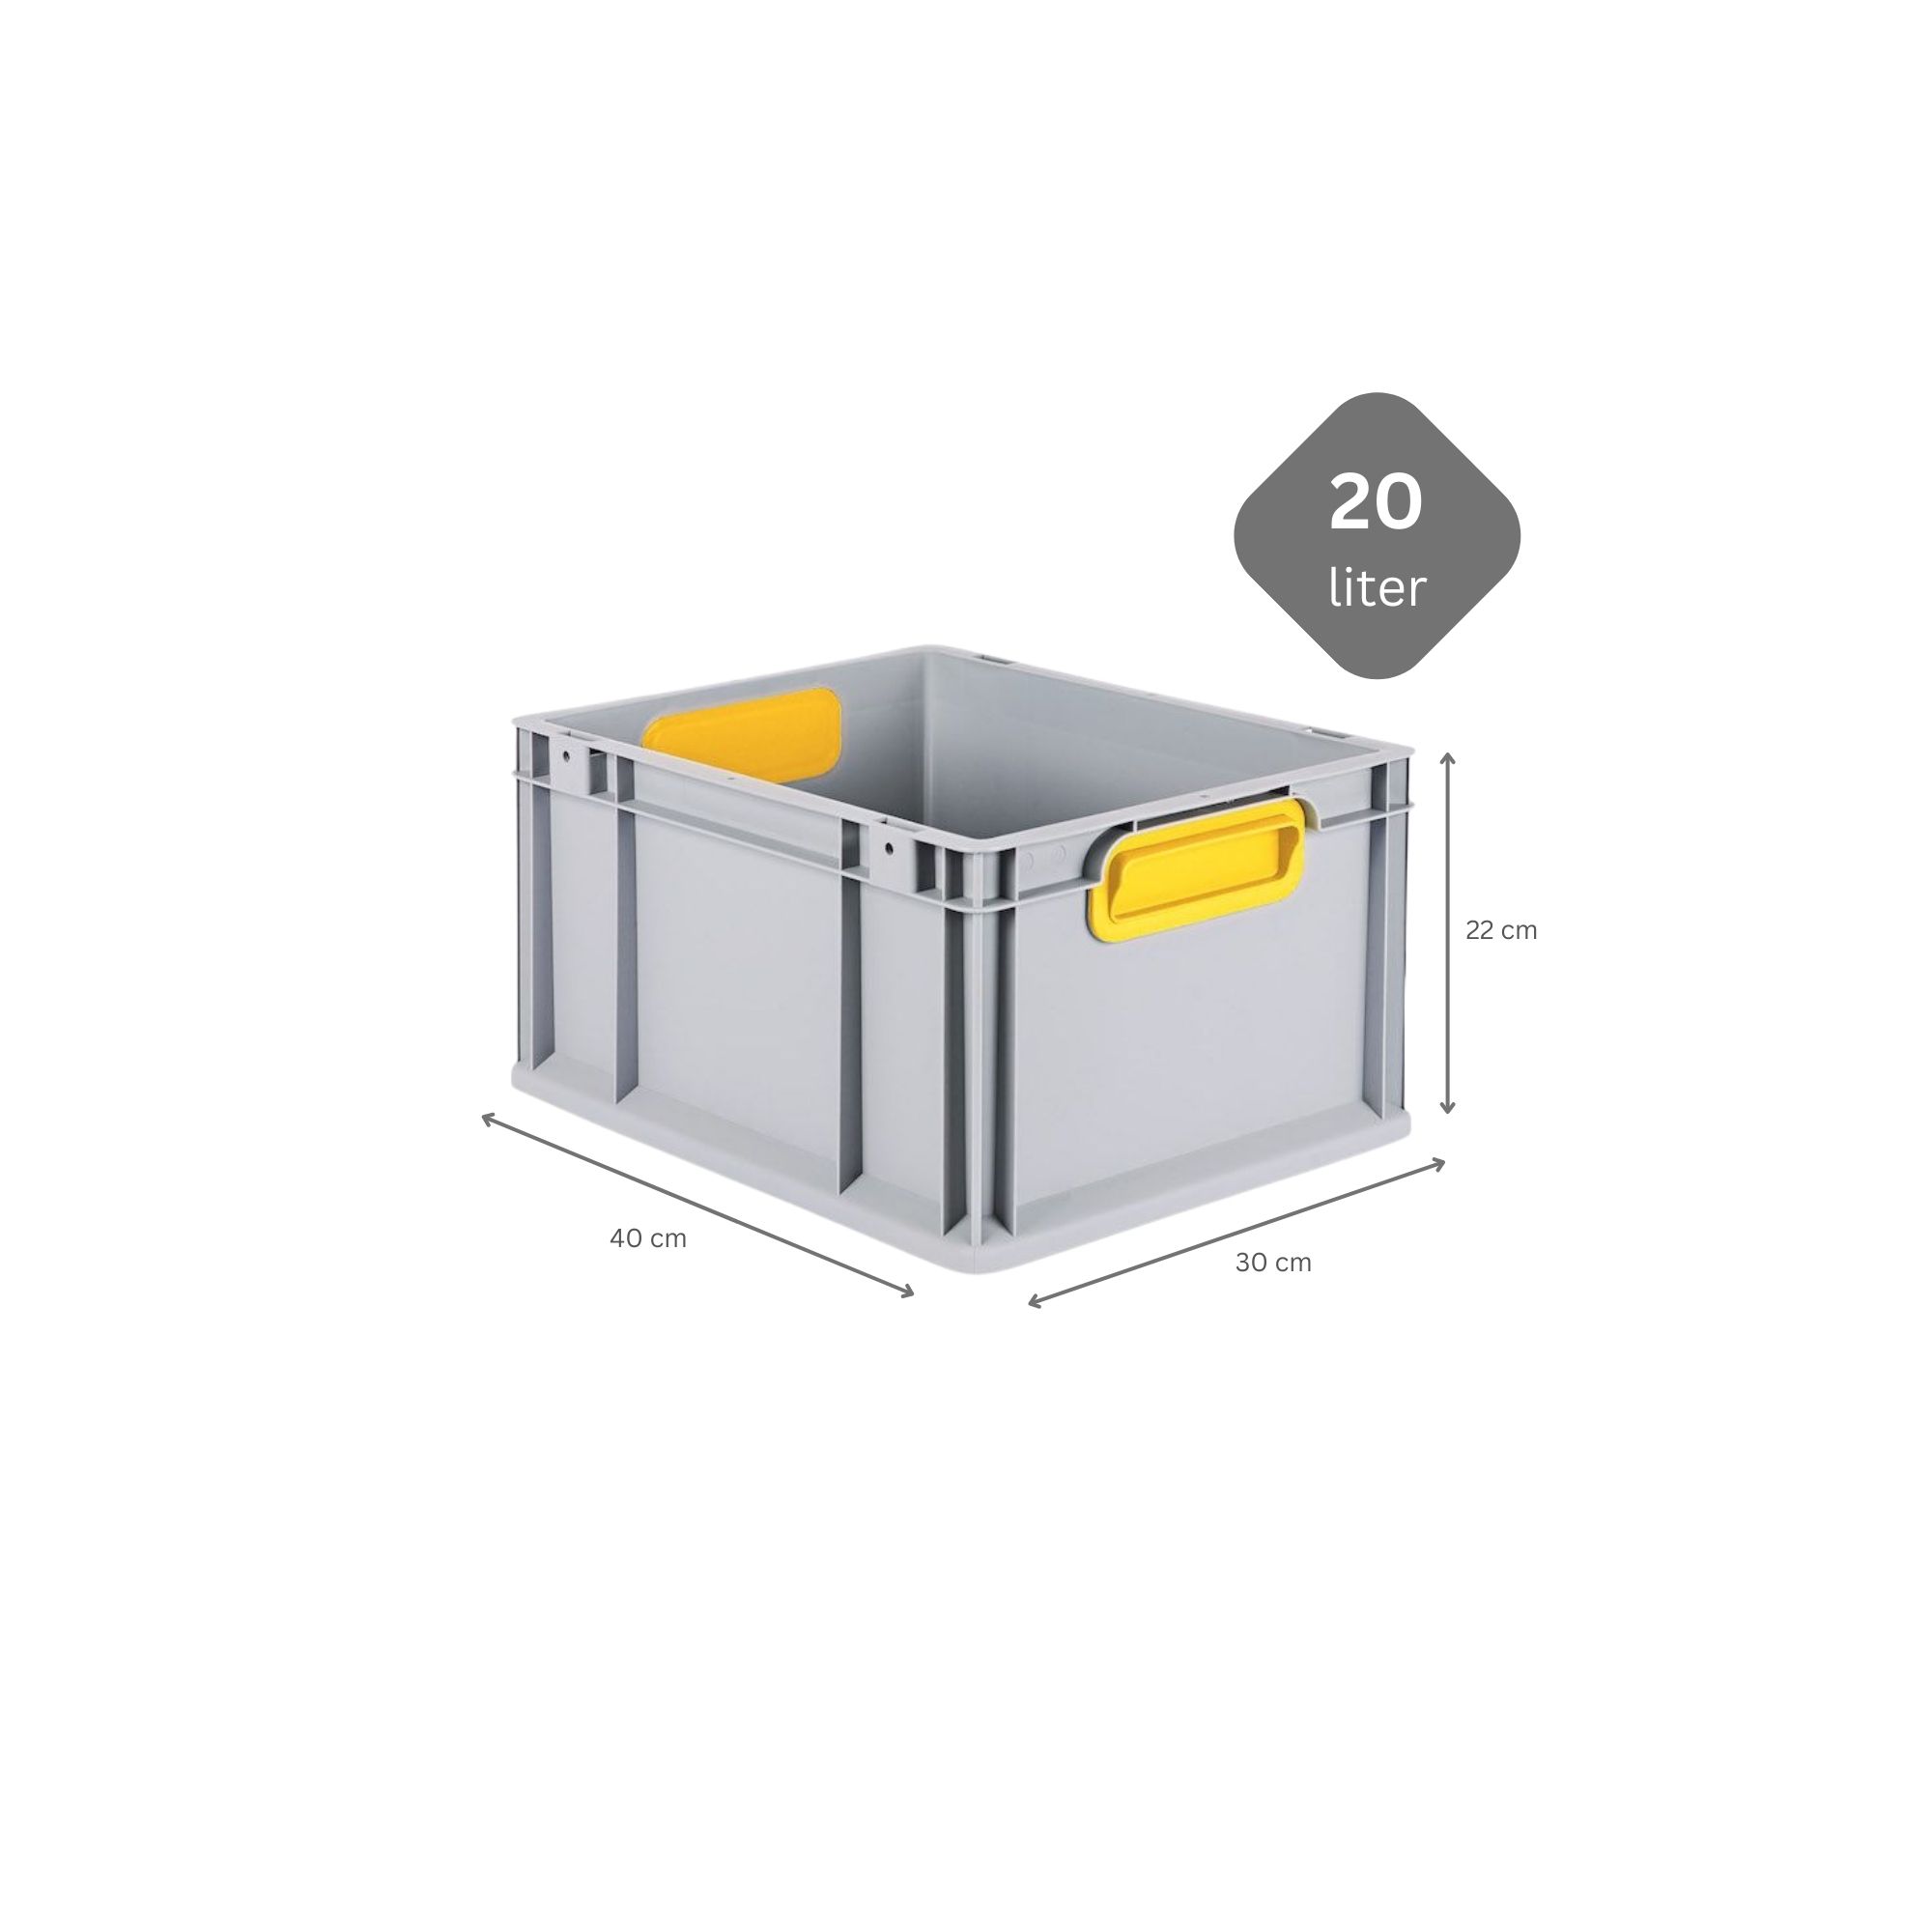 SparSet 5x Eurobox NextGen Color mit Auflagedeckel und Schiebeschnappverschlüsse | HxBxT 22x30x40cm | 20 Liter | Griffe gelb geschlossen | Glatter Boden | Eurobehälter, Transportbox, Transportbehälter, Stapelbehälter